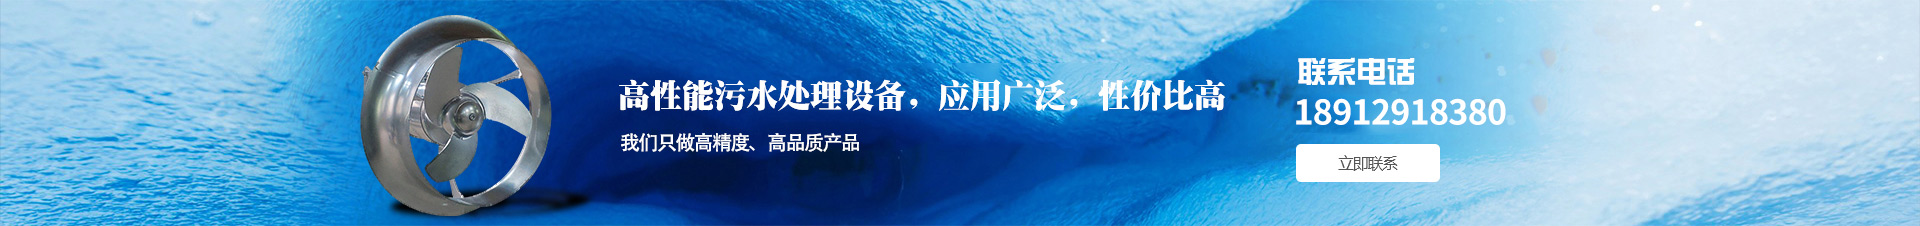 南京澳特蓝环保设备有限公司